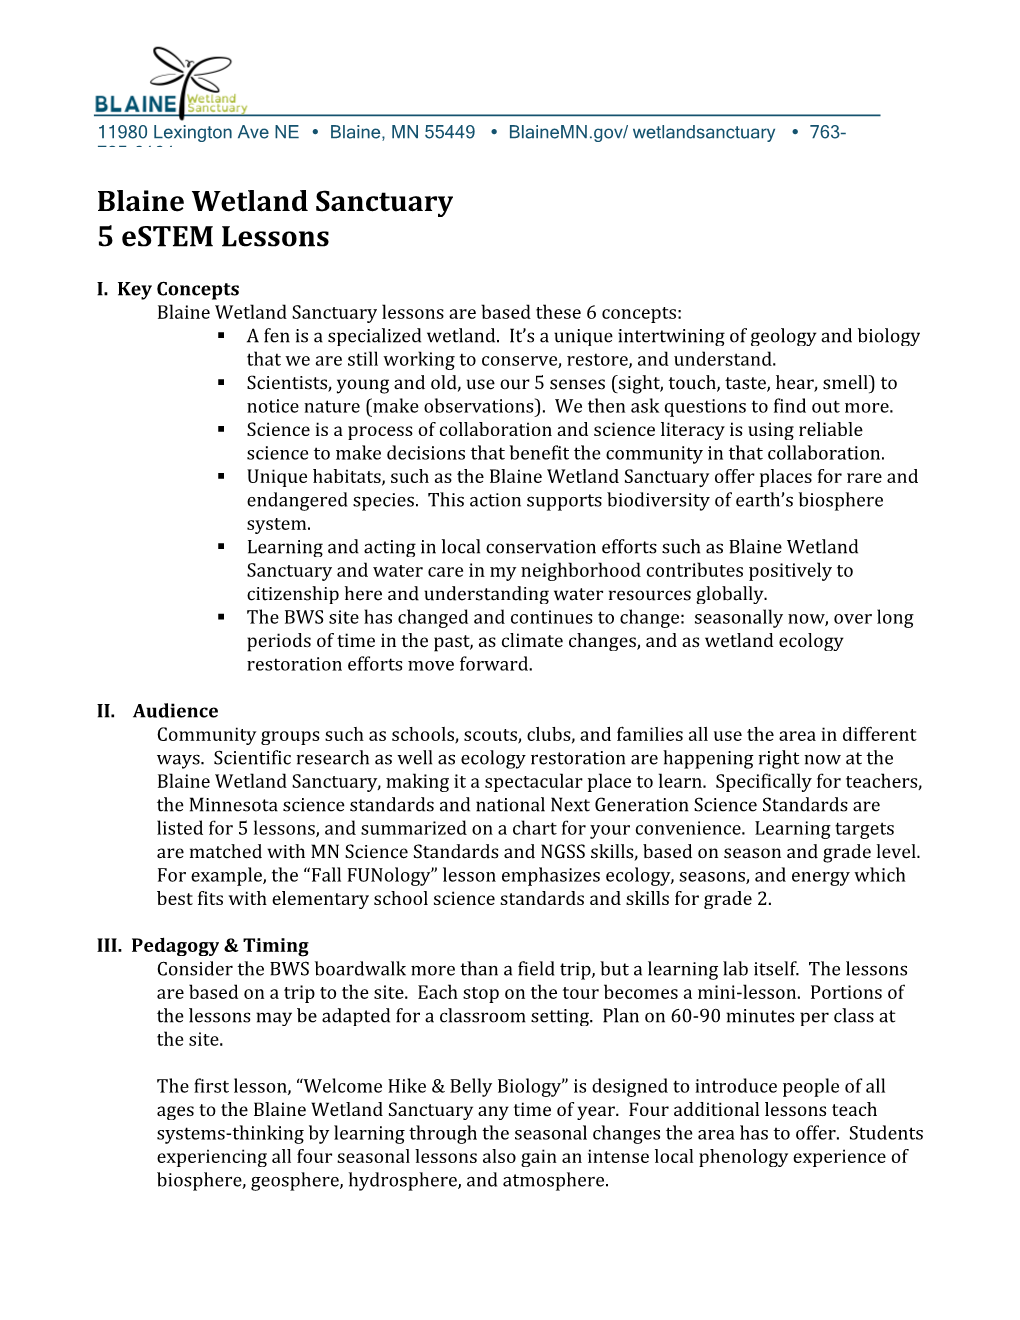 Blaine Wetland Sanctuary 5 Estem Lessons